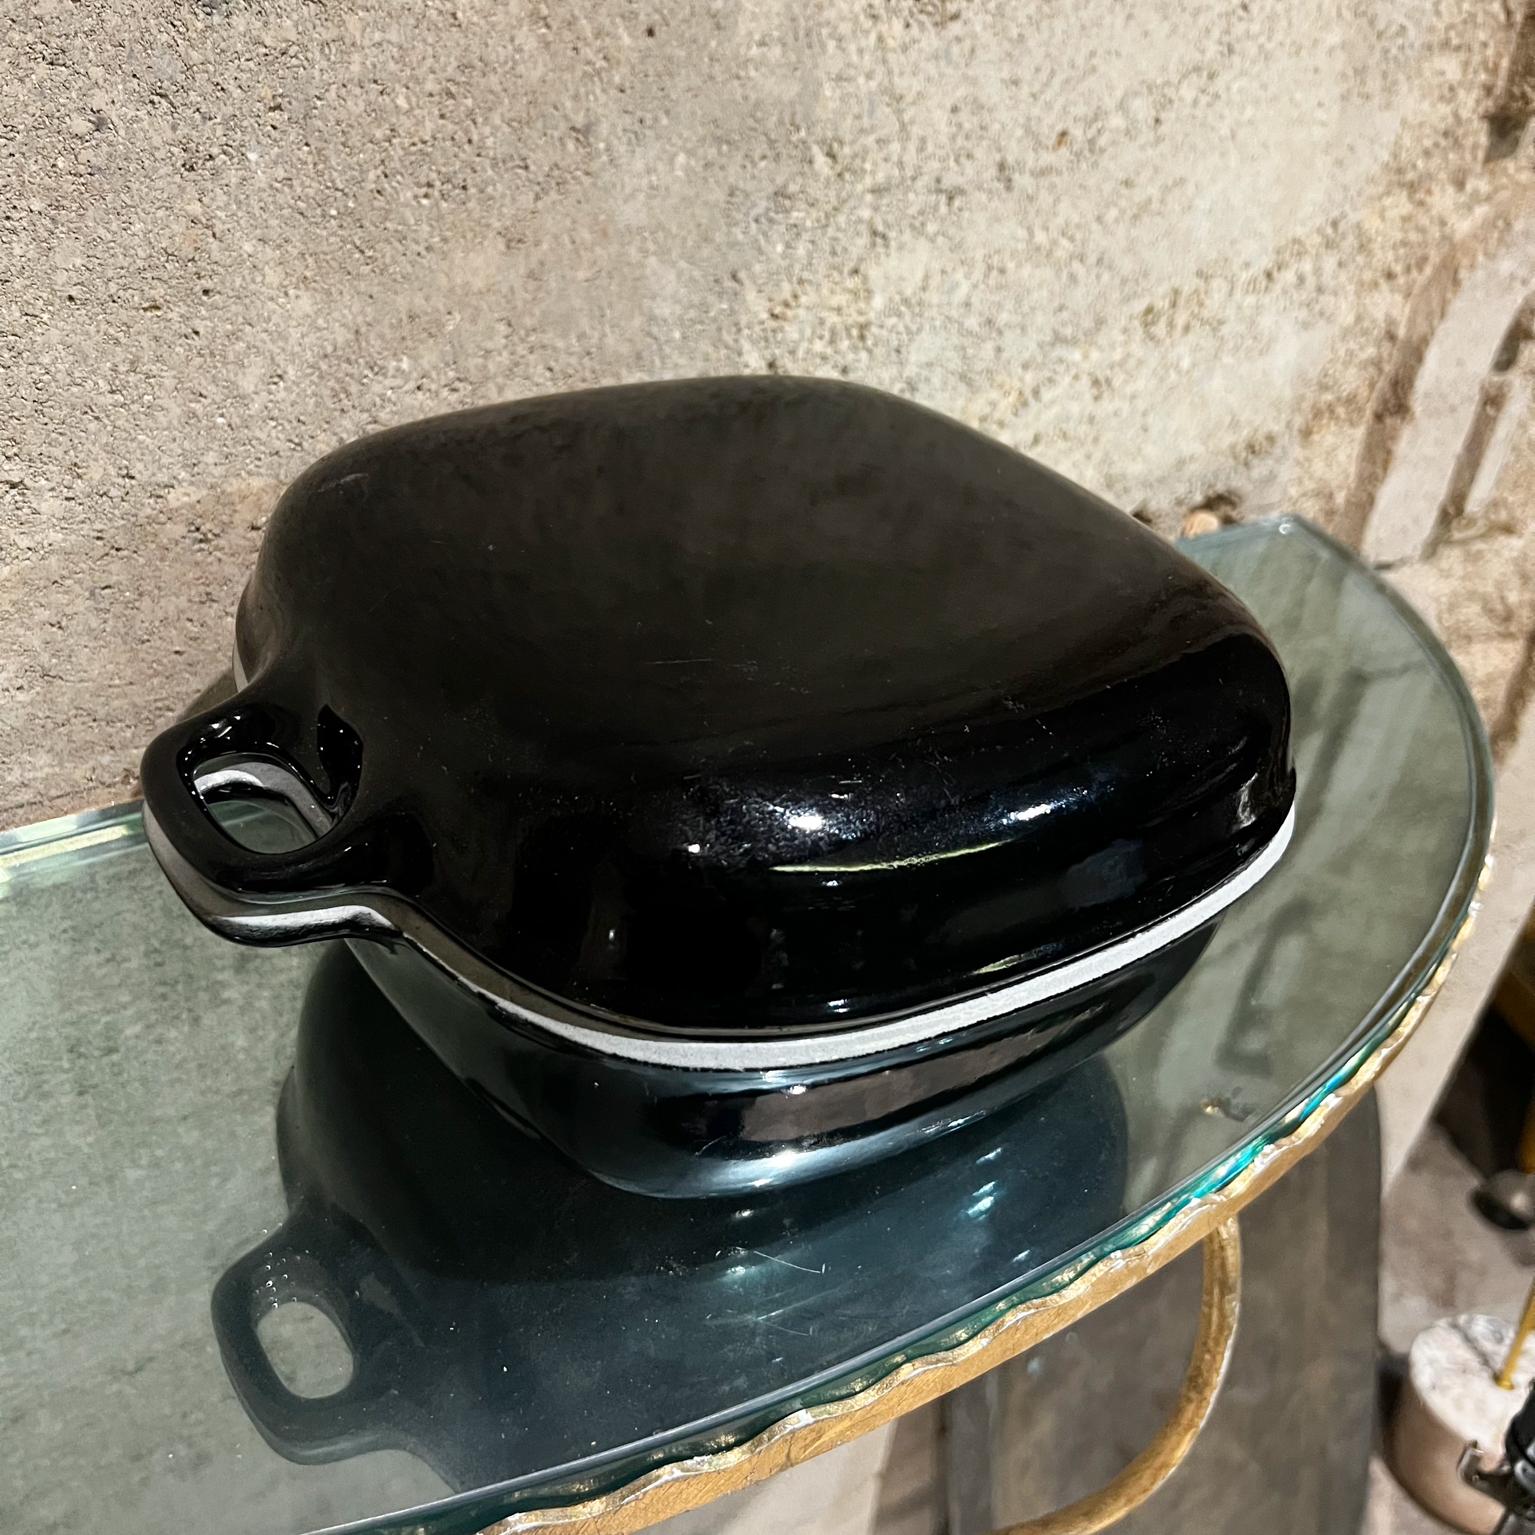 Danish 1954 Jens Quistgaard Ankerline Casserole Cast Iron Dutch Oven Pot Made Denmark